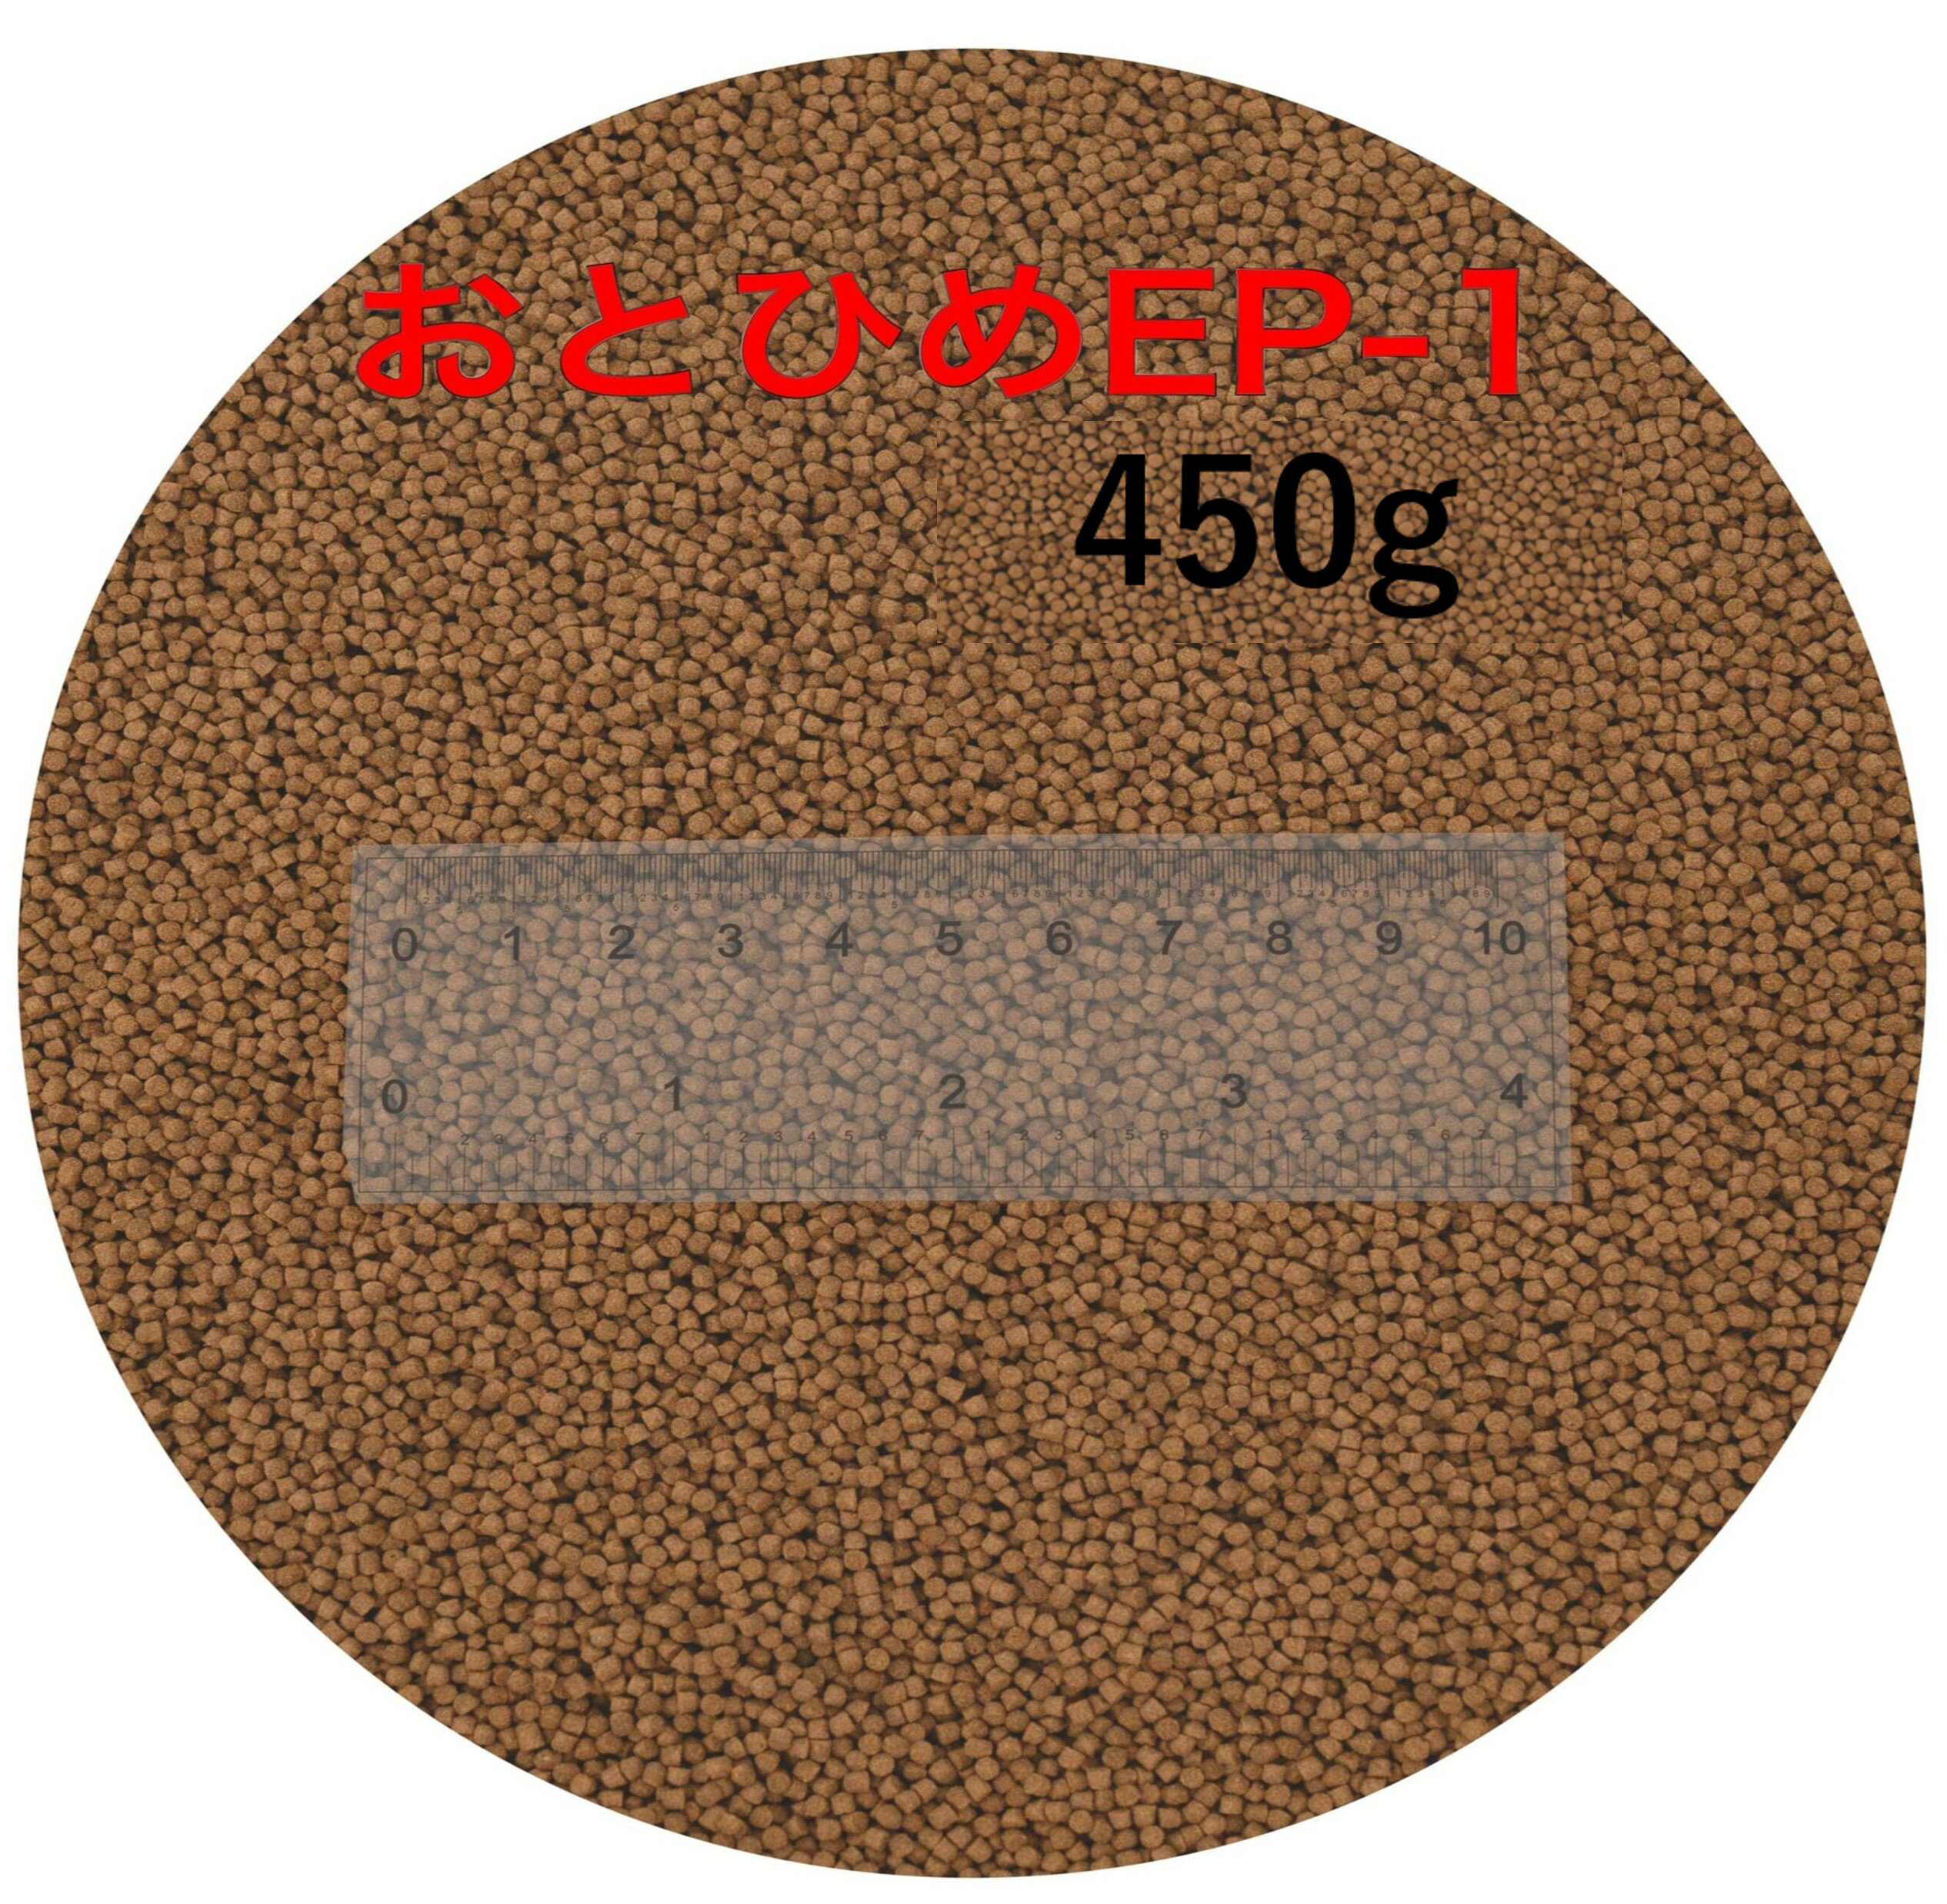 日清丸紅飼料 おとひめEP1 450g (1.3〜1.7mm) 沈降性(沈下性) 小分け品 金魚 餌 500gから規格変更